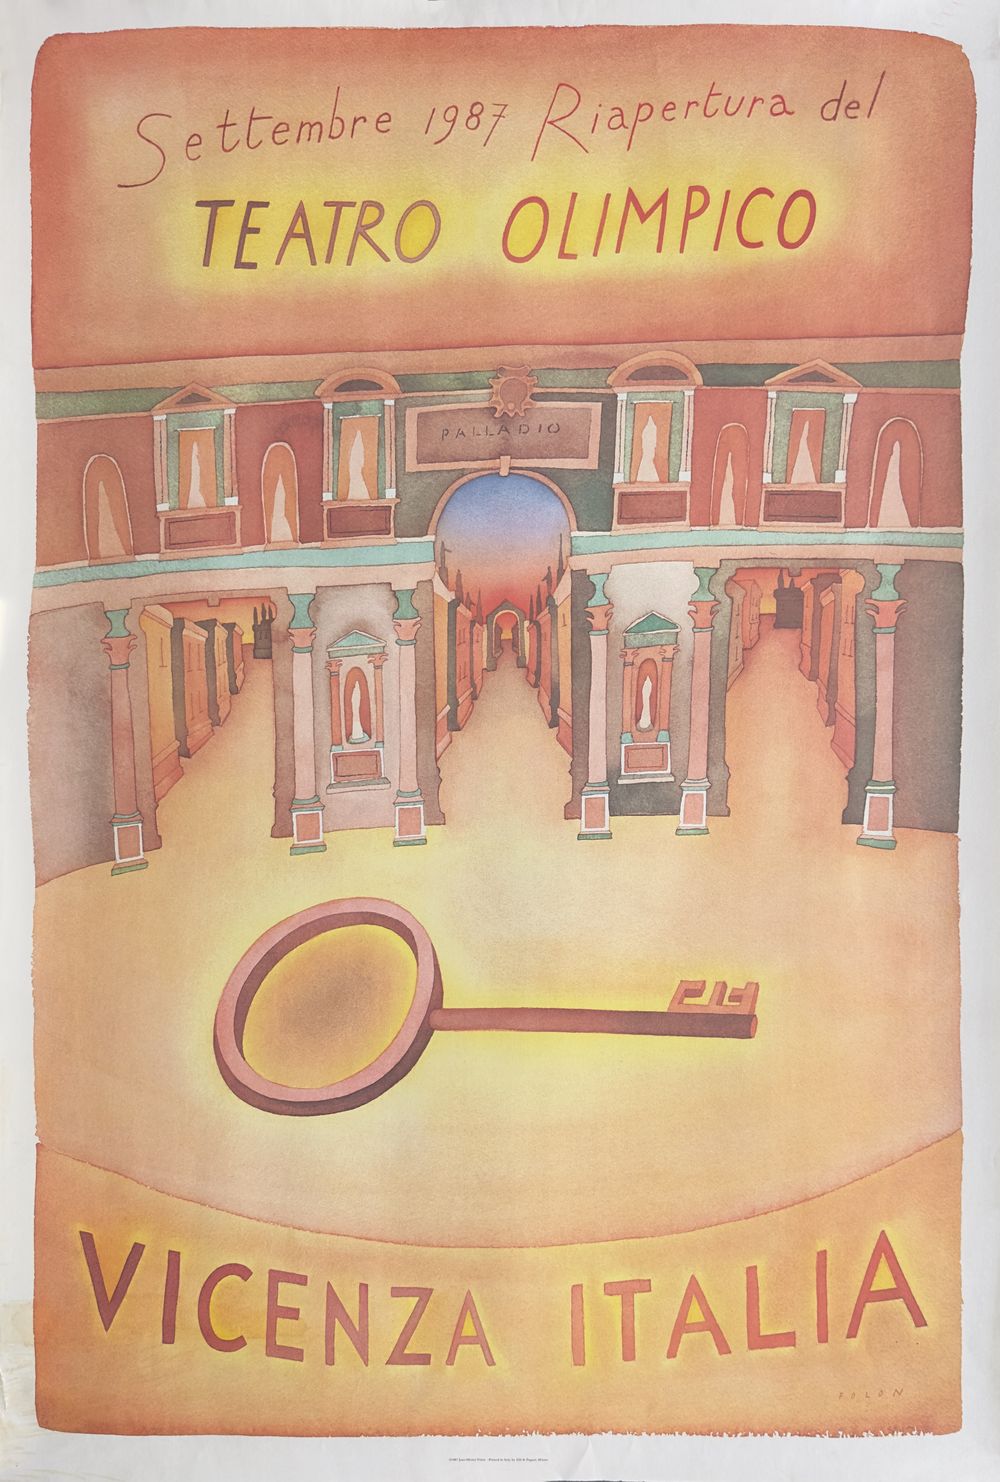 Expo 1987 - Riapertura del Teatro Olimpico - Vicenza